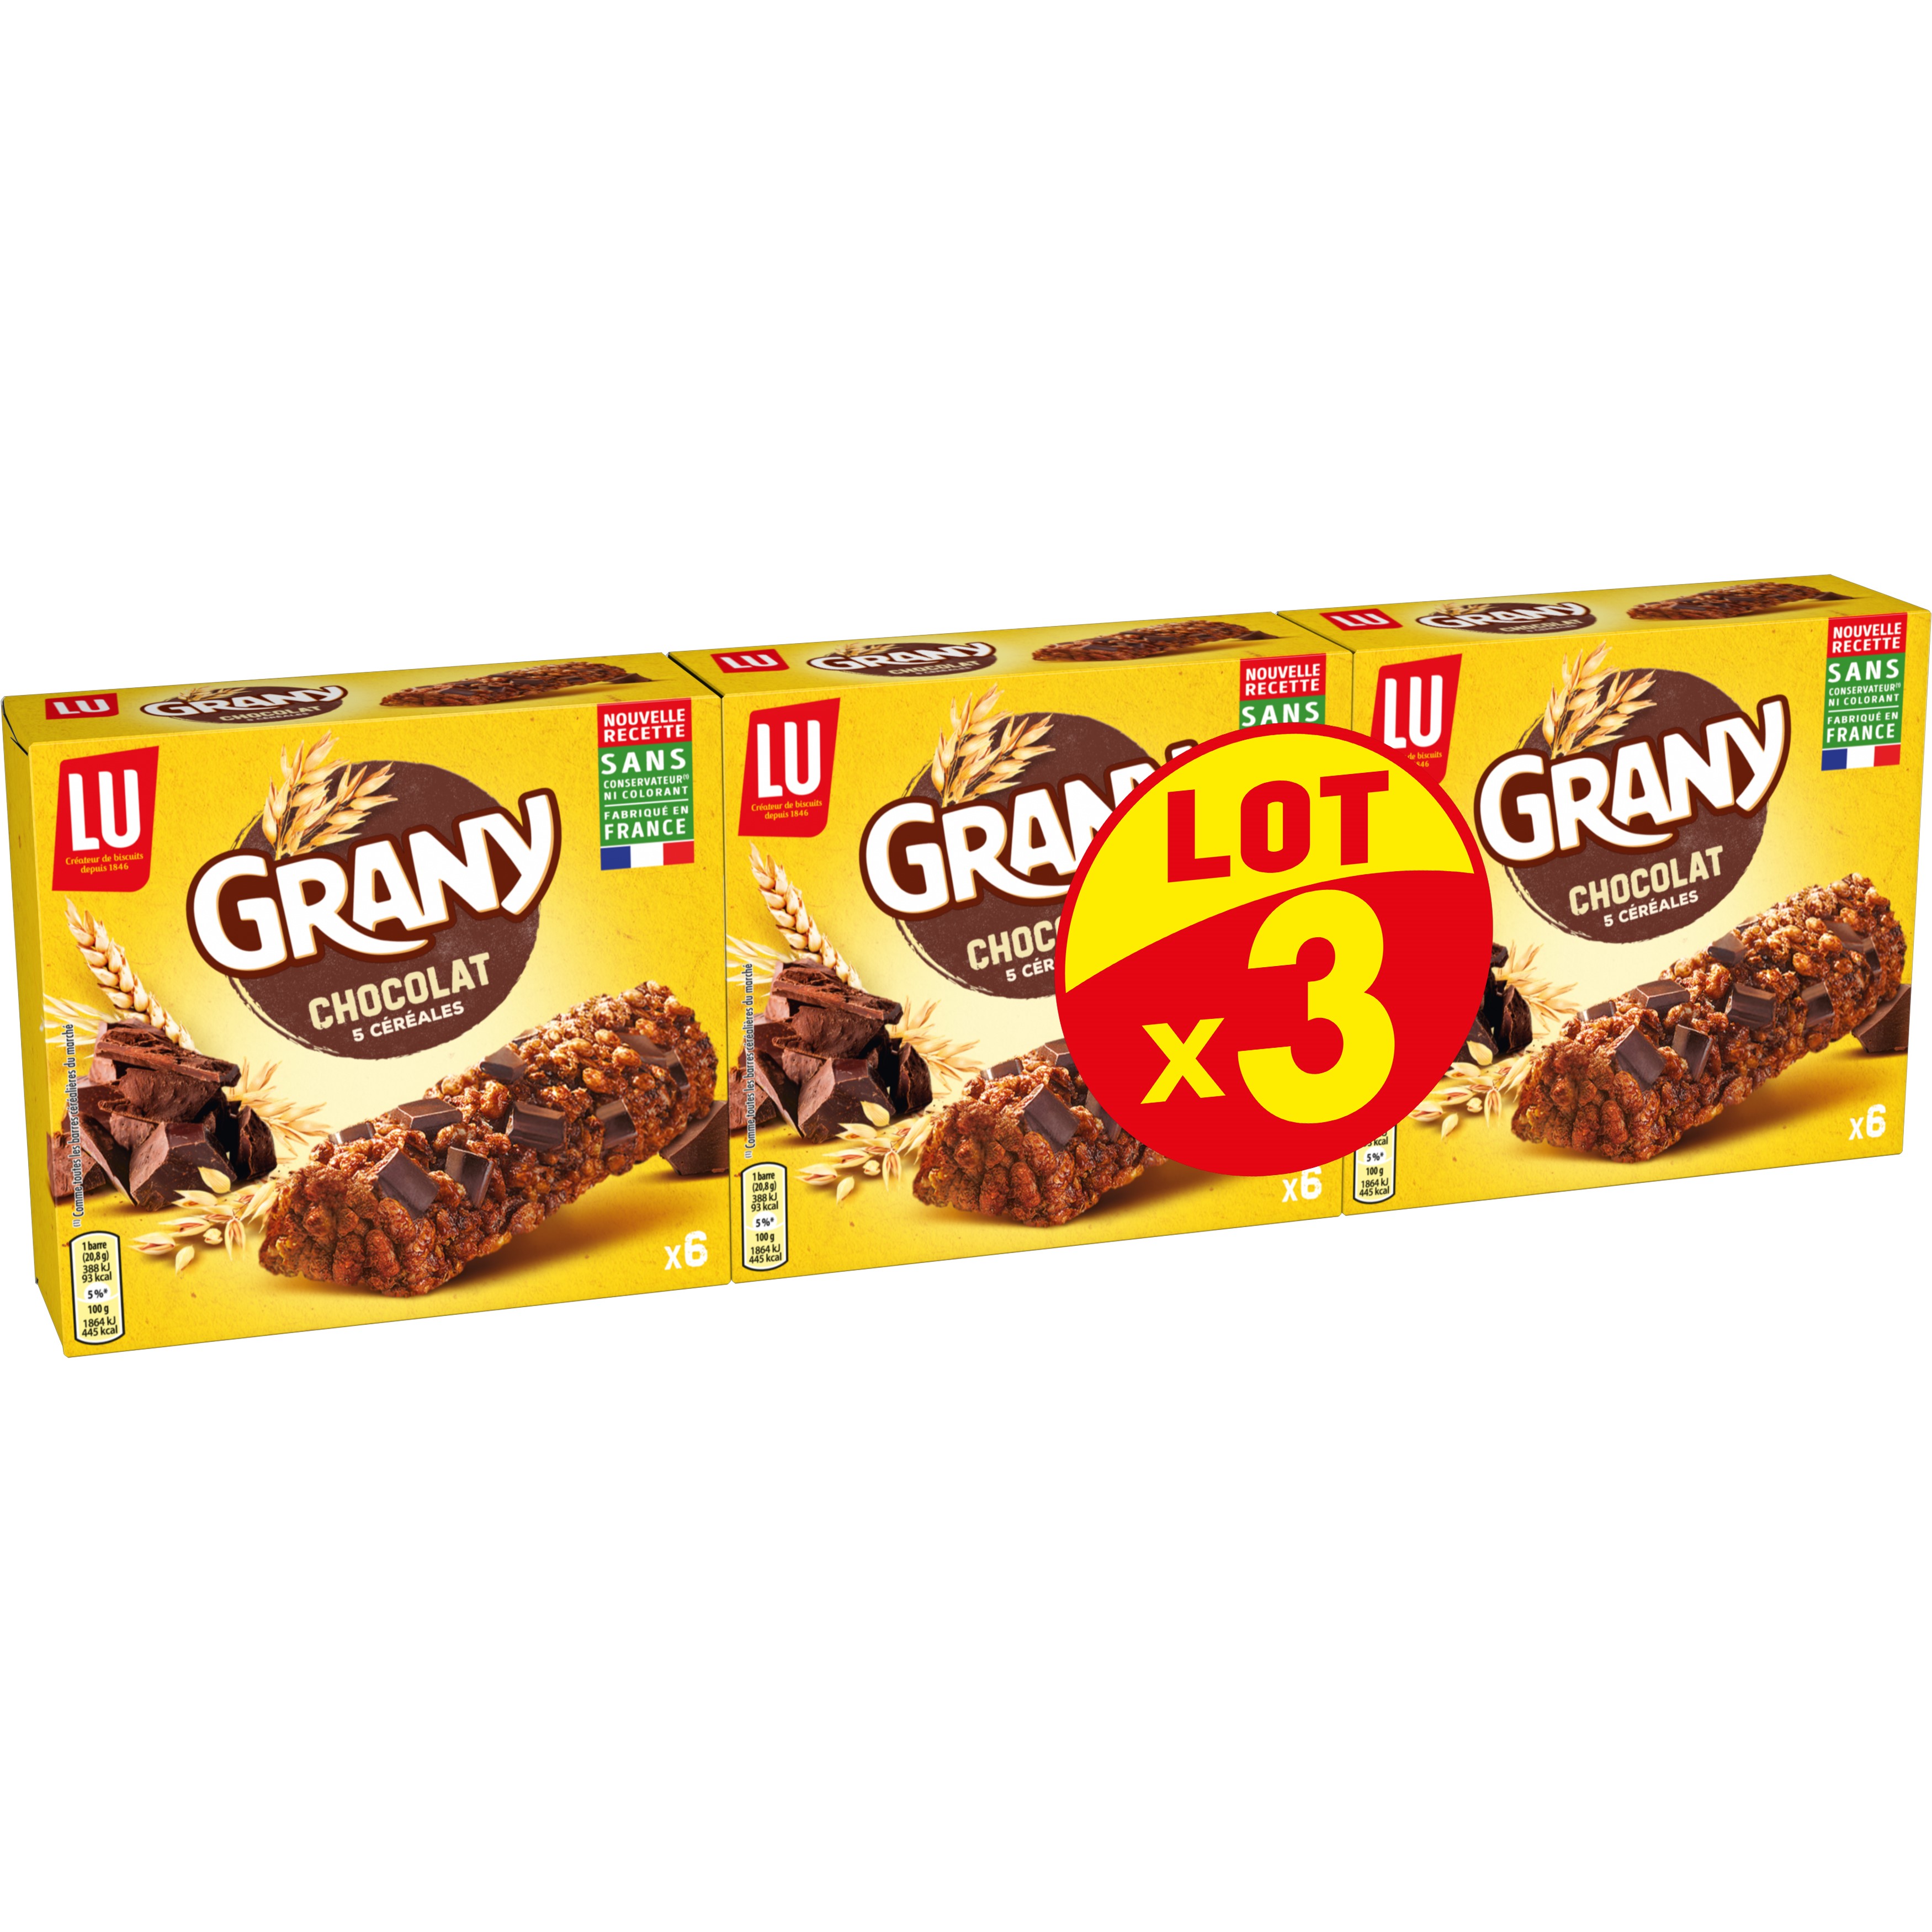 AUCHAN MIEUX VIVRE Cookies éclats de chocolat sans gluten 8 cookies 150g  pas cher 